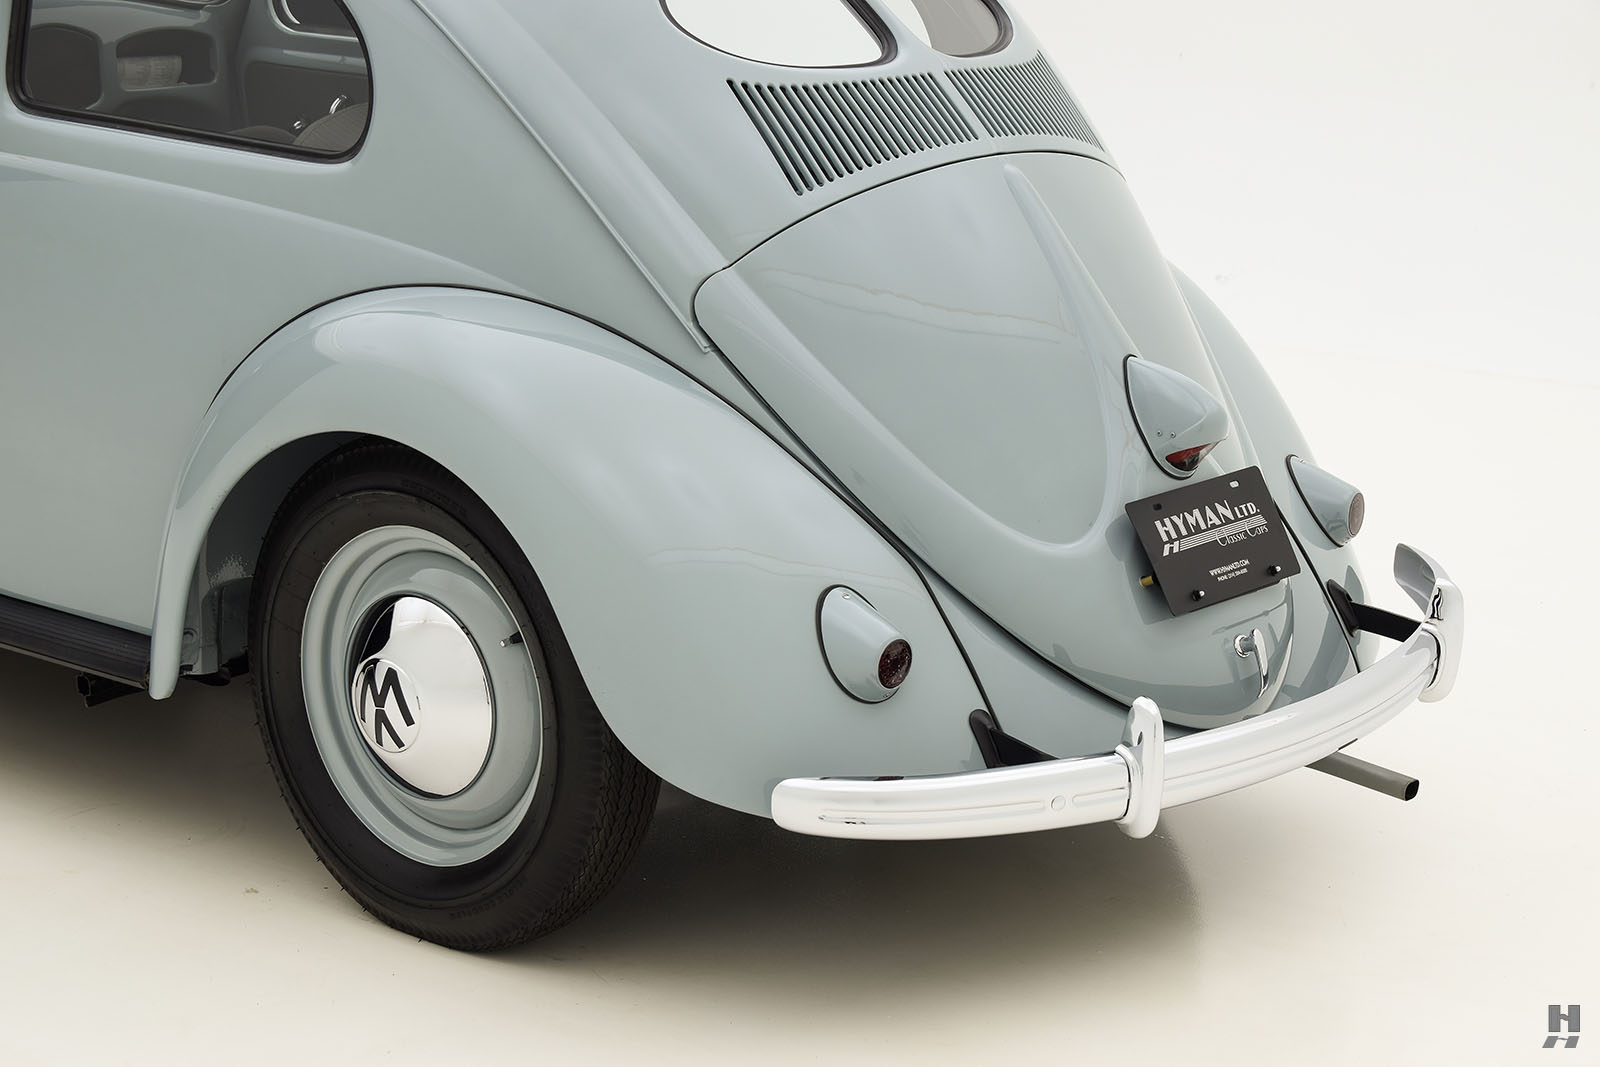 1960 volkswagen beetle